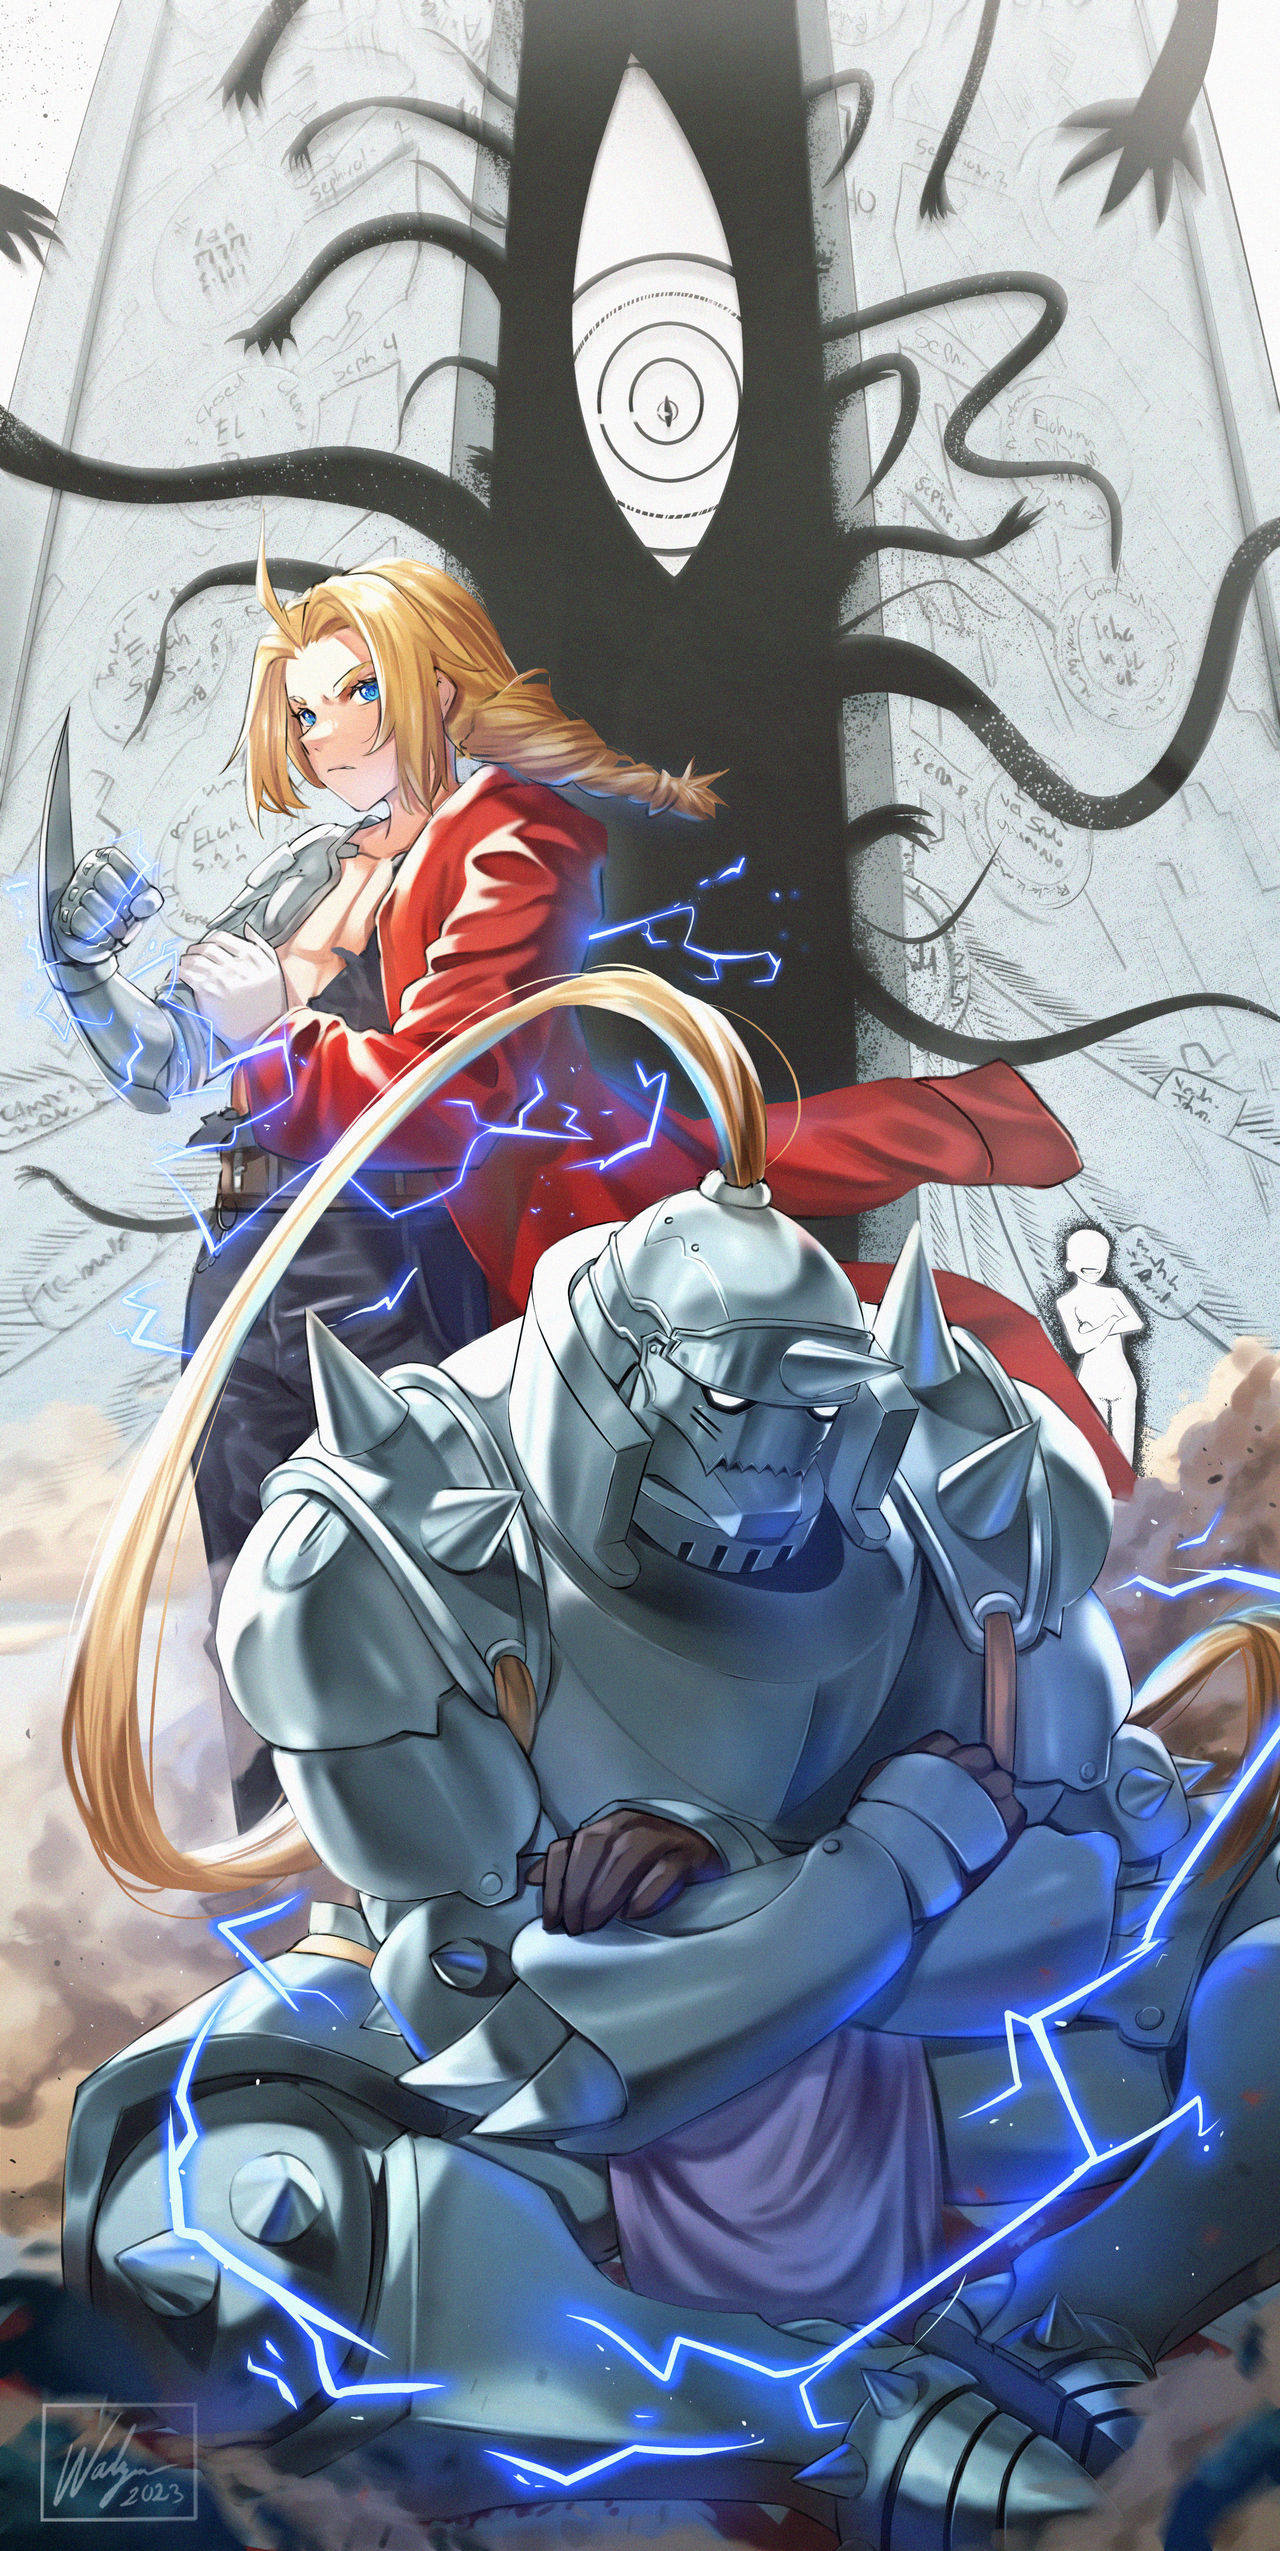 FMA Official Art on X: Anime: Fullmetal Alchemist Brotherhood